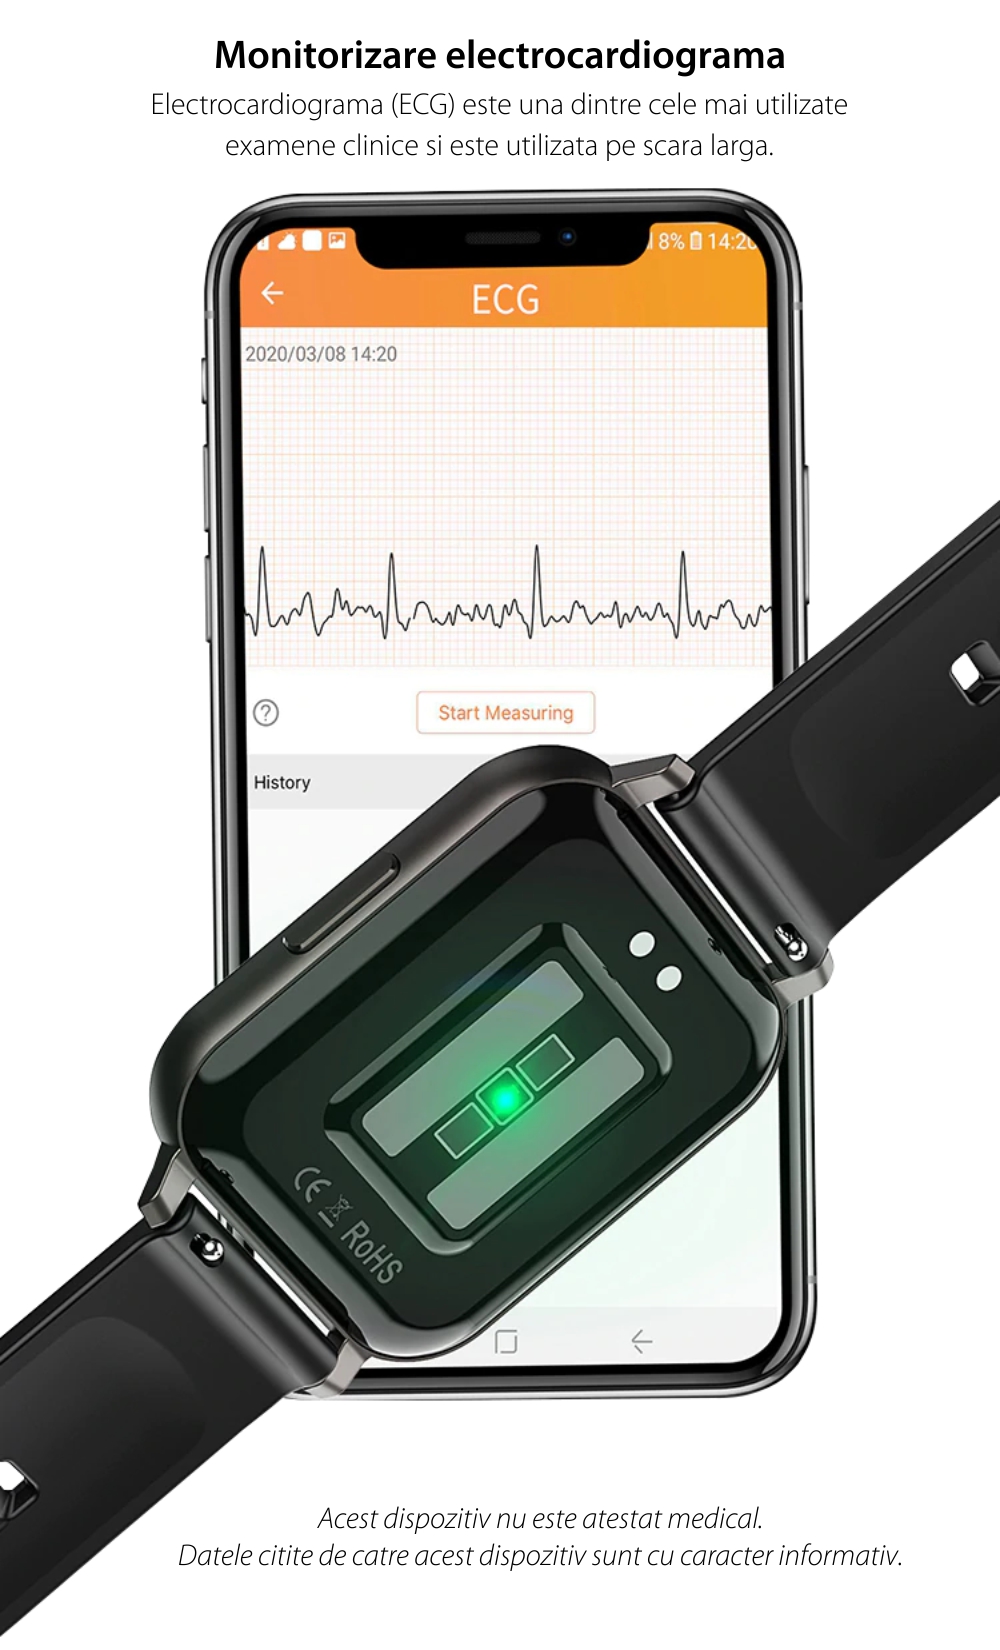 Ceas smartwatch Twinkler TKY-DTX, Bratara silicon, Negru cu ECG, Tensiune arteriala, ritm cardiac, oxigen din sange, interfete schimbabile, memento sedentar, Monitorizarea calitatii somnului